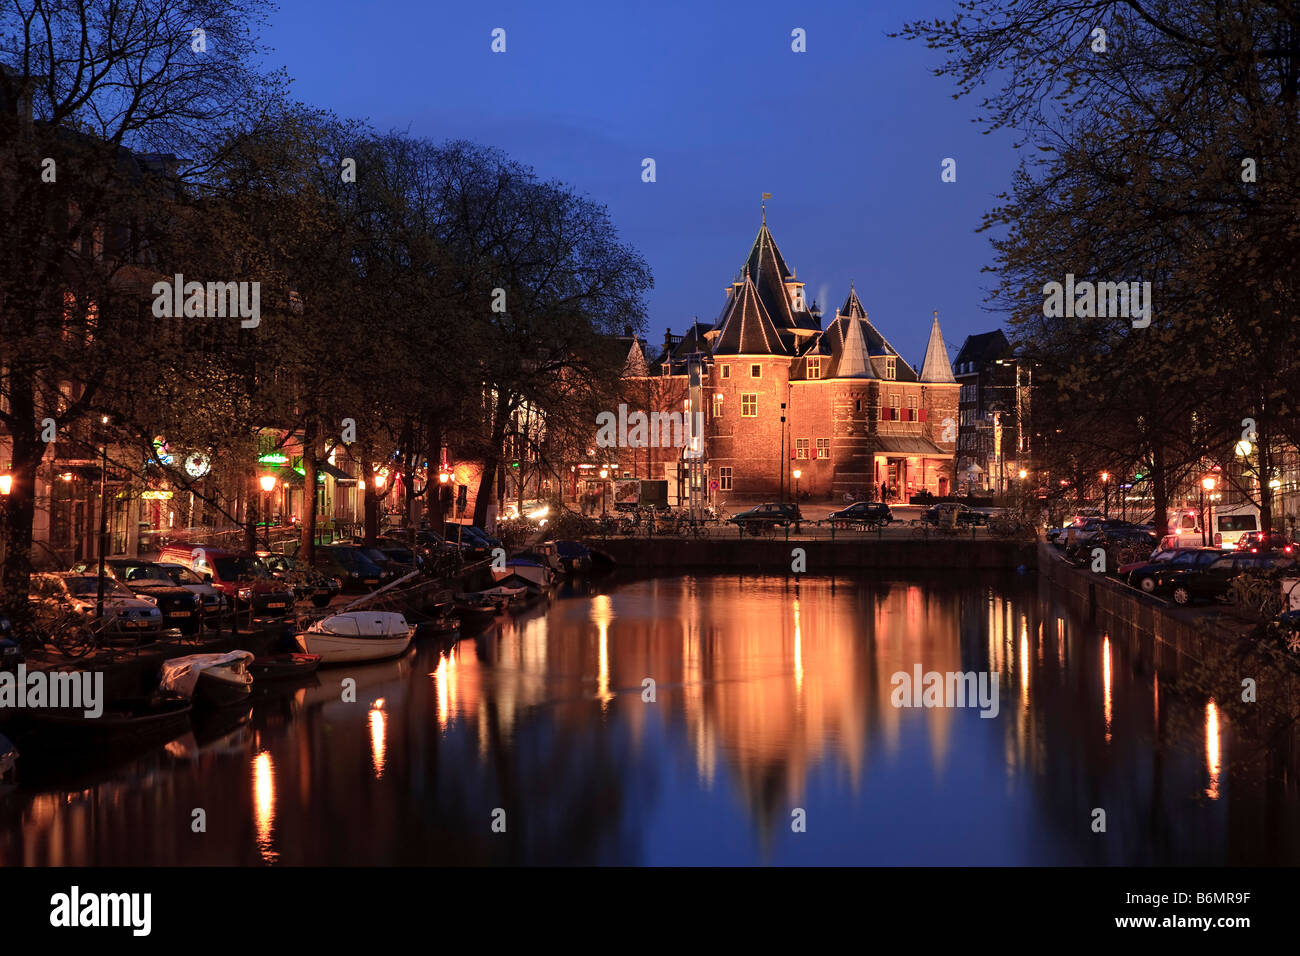 Kloveniers Burgwal Kanal und Waag historisches Gebäude Nieuwmarkt Amsterdam Niederlande Stockfoto